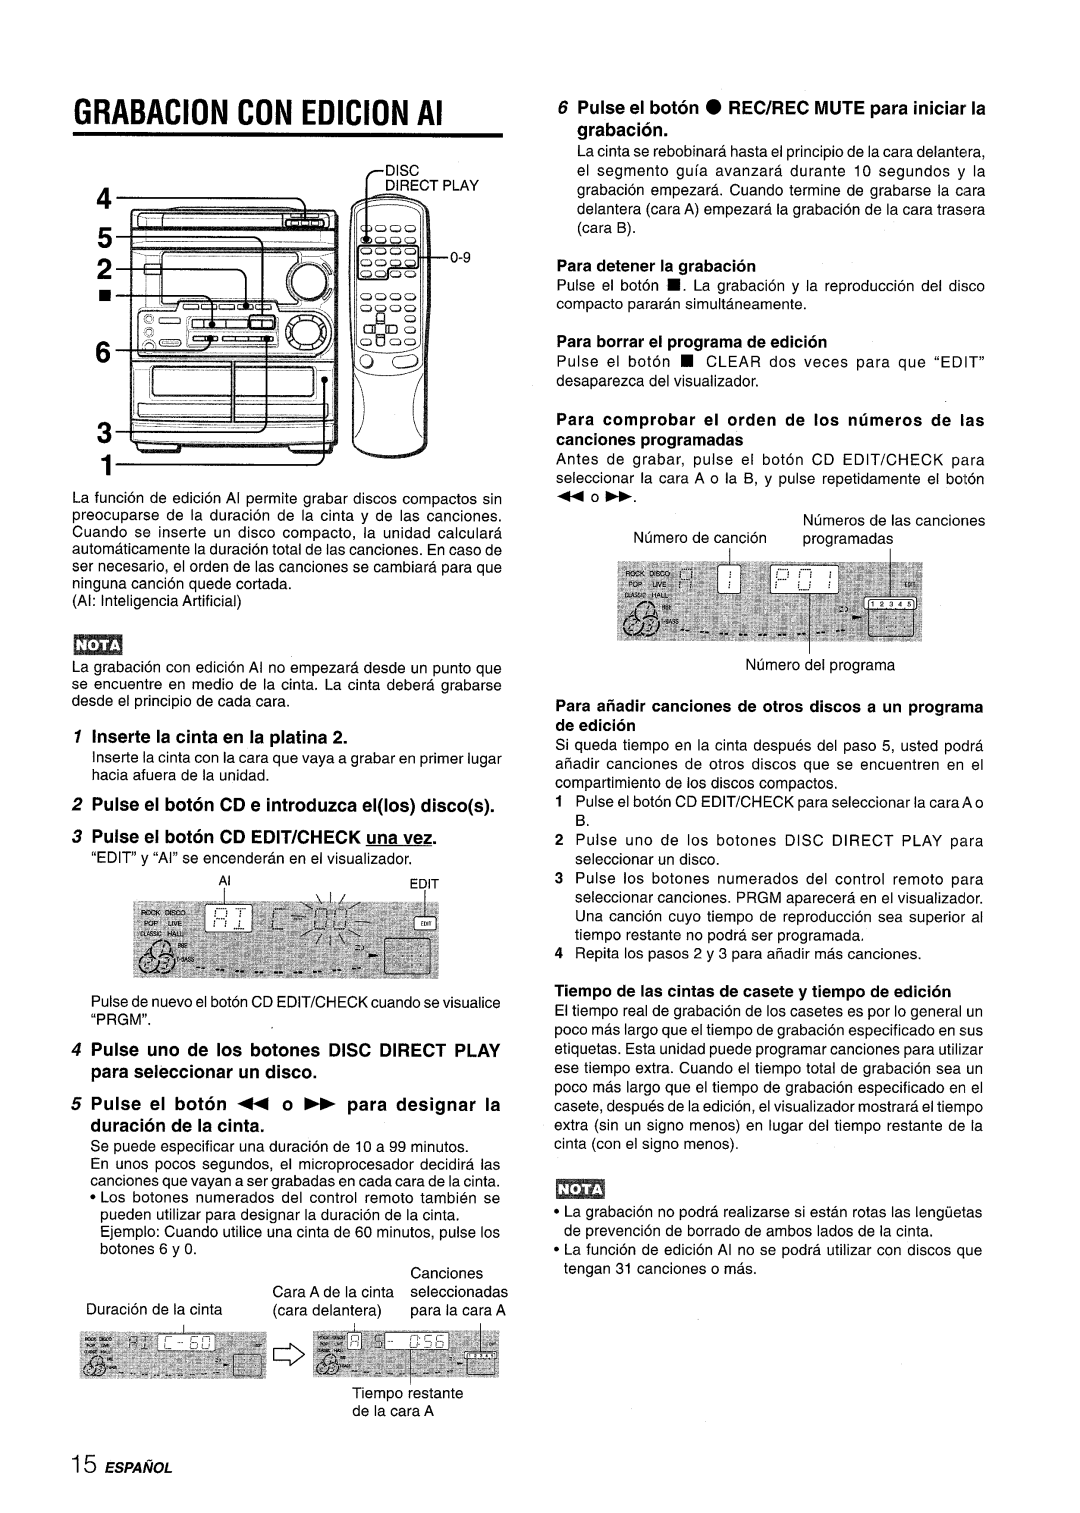 Aiwa CX-NMT50 manual GRABACION CON EDICION Al, Inserte la cinta en la platina, Pulse el boton CD e introduzca ellos discos 